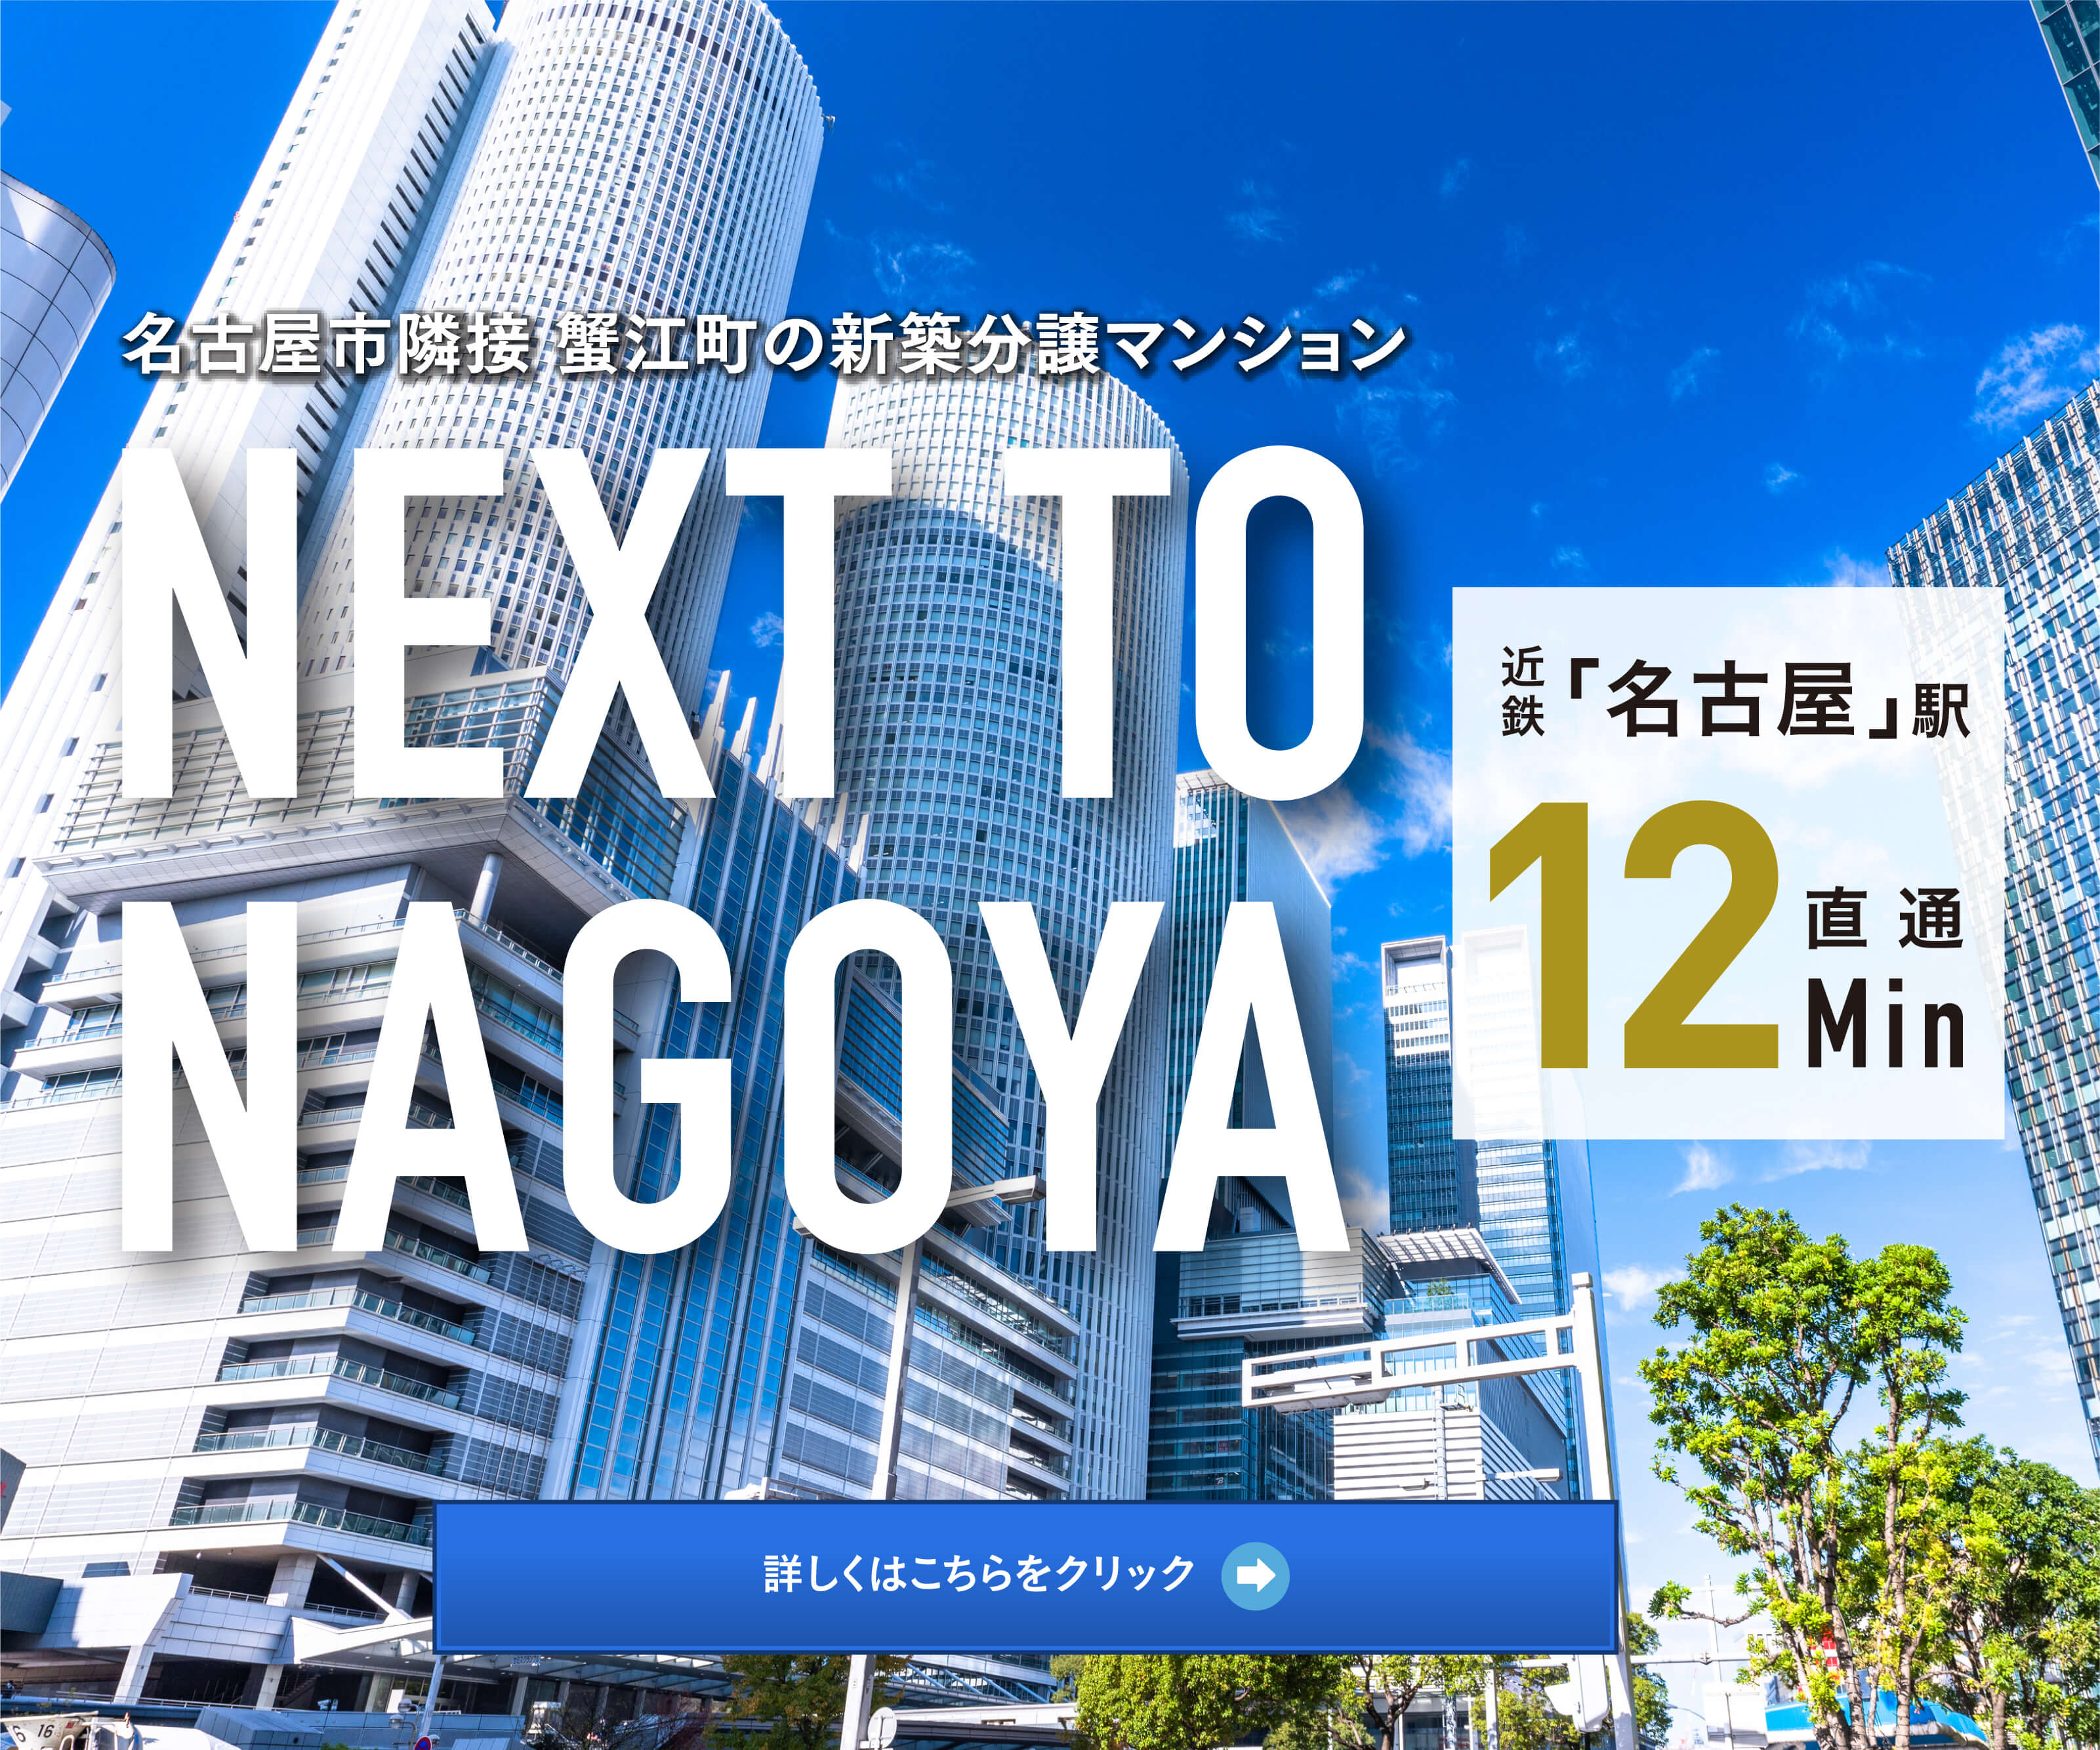 名古屋市隣接 蟹江町の新築分譲マンション NEXT TO NAGOYA